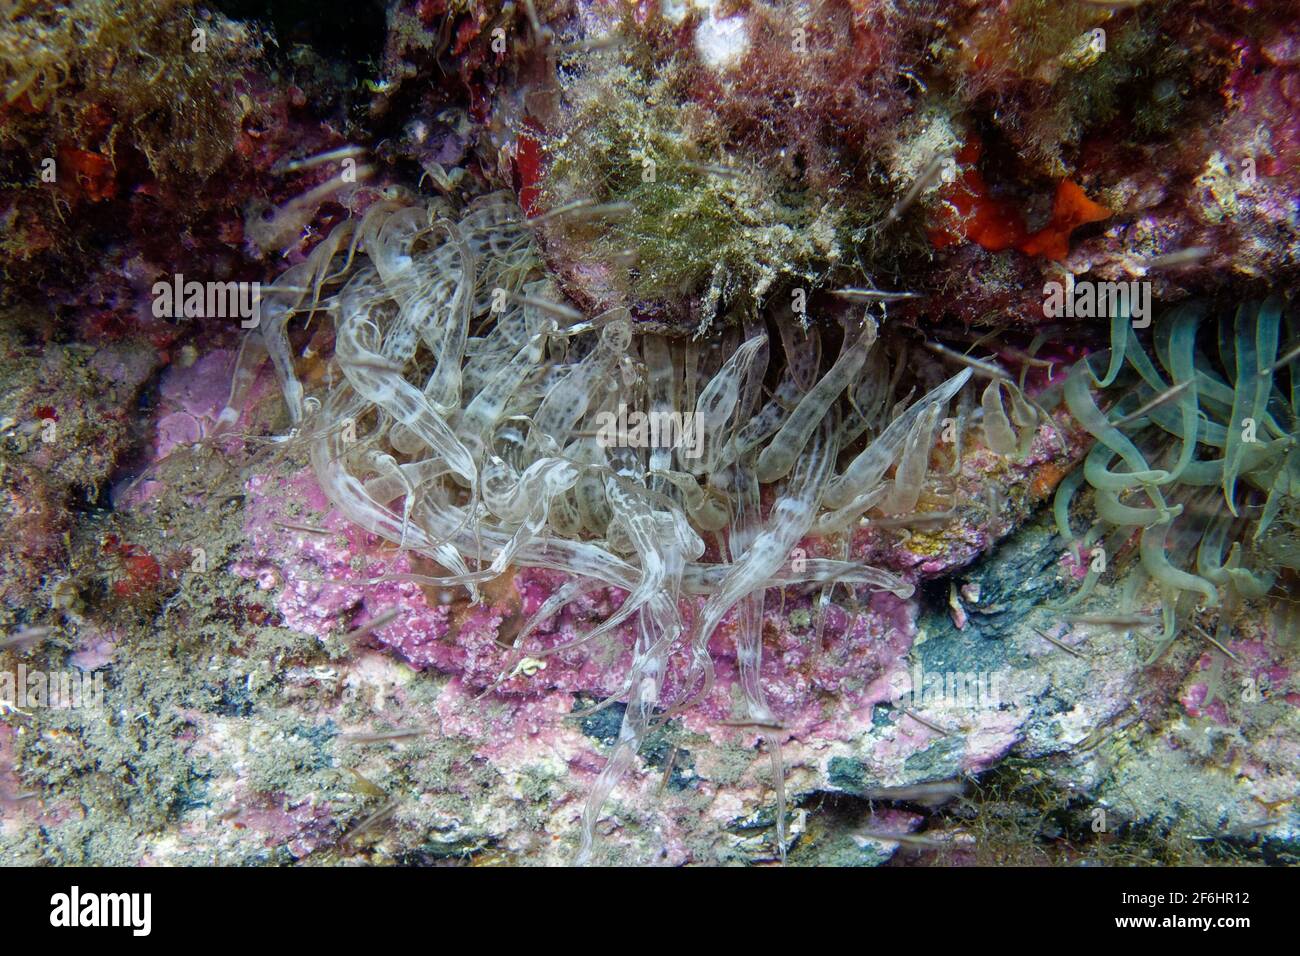 Trumpet anemone (Aiptasia mutabilis) Stock Photo